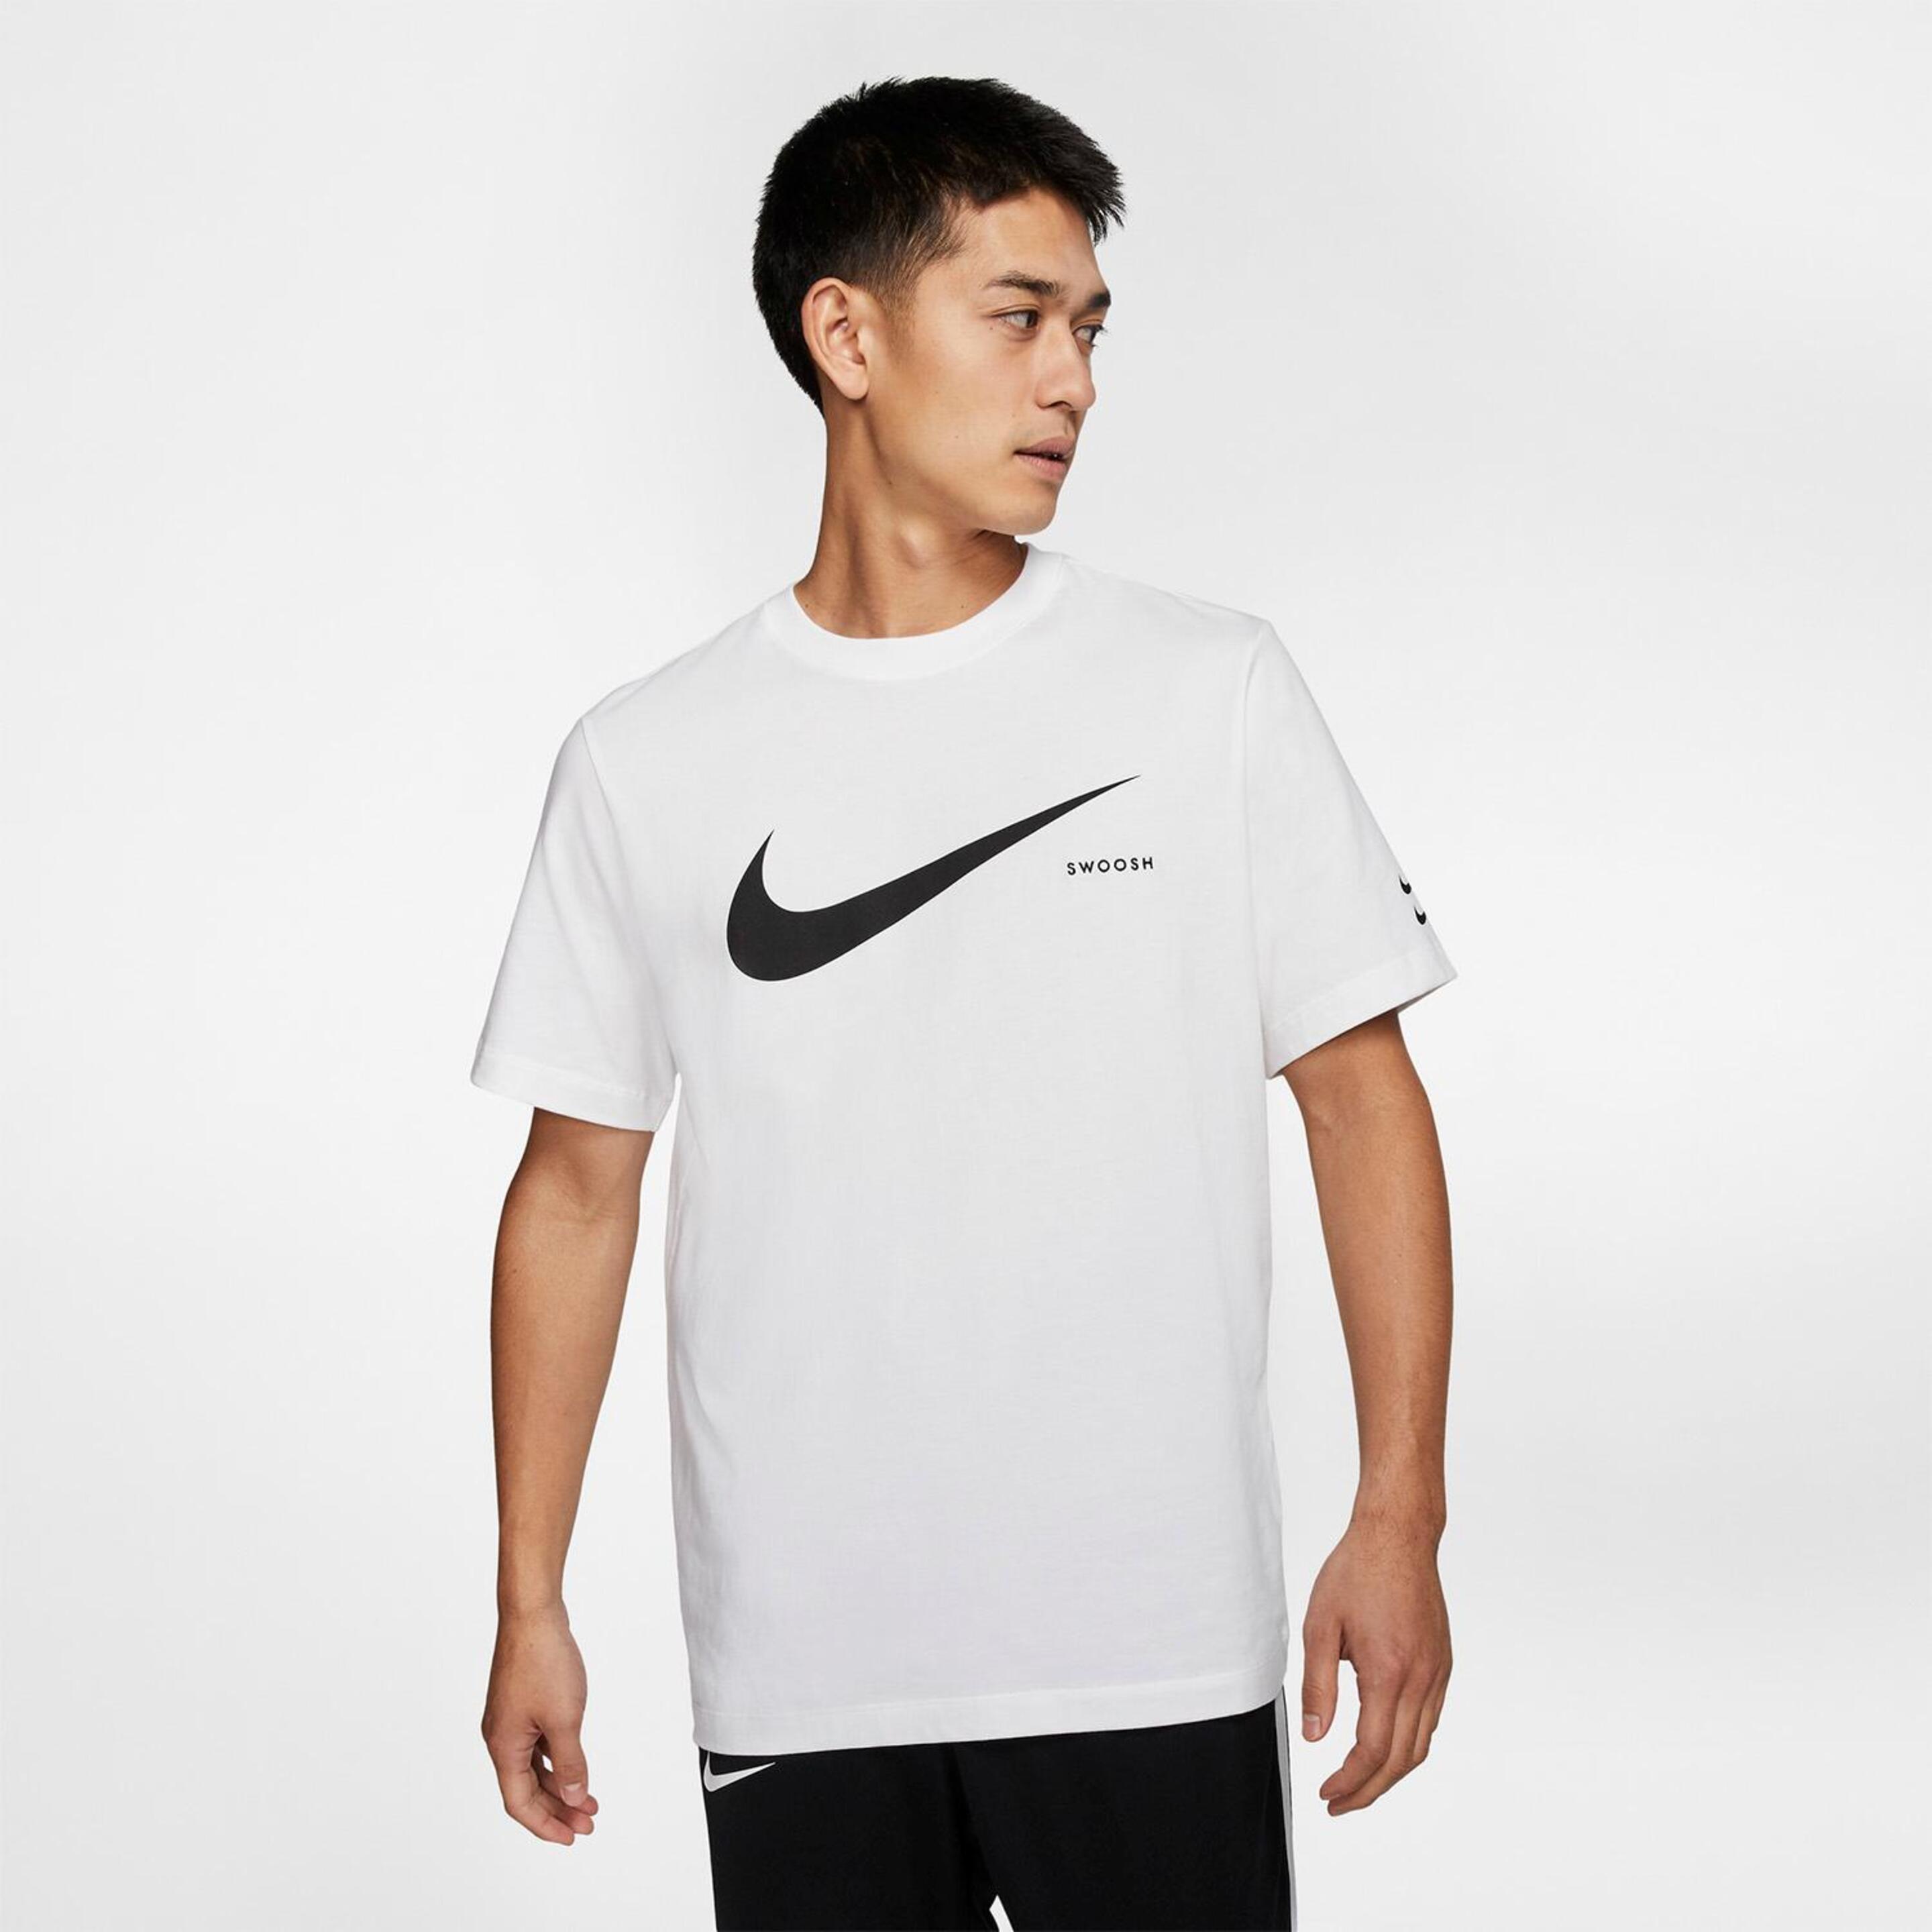 T-shirt Nike Swoosh Tee